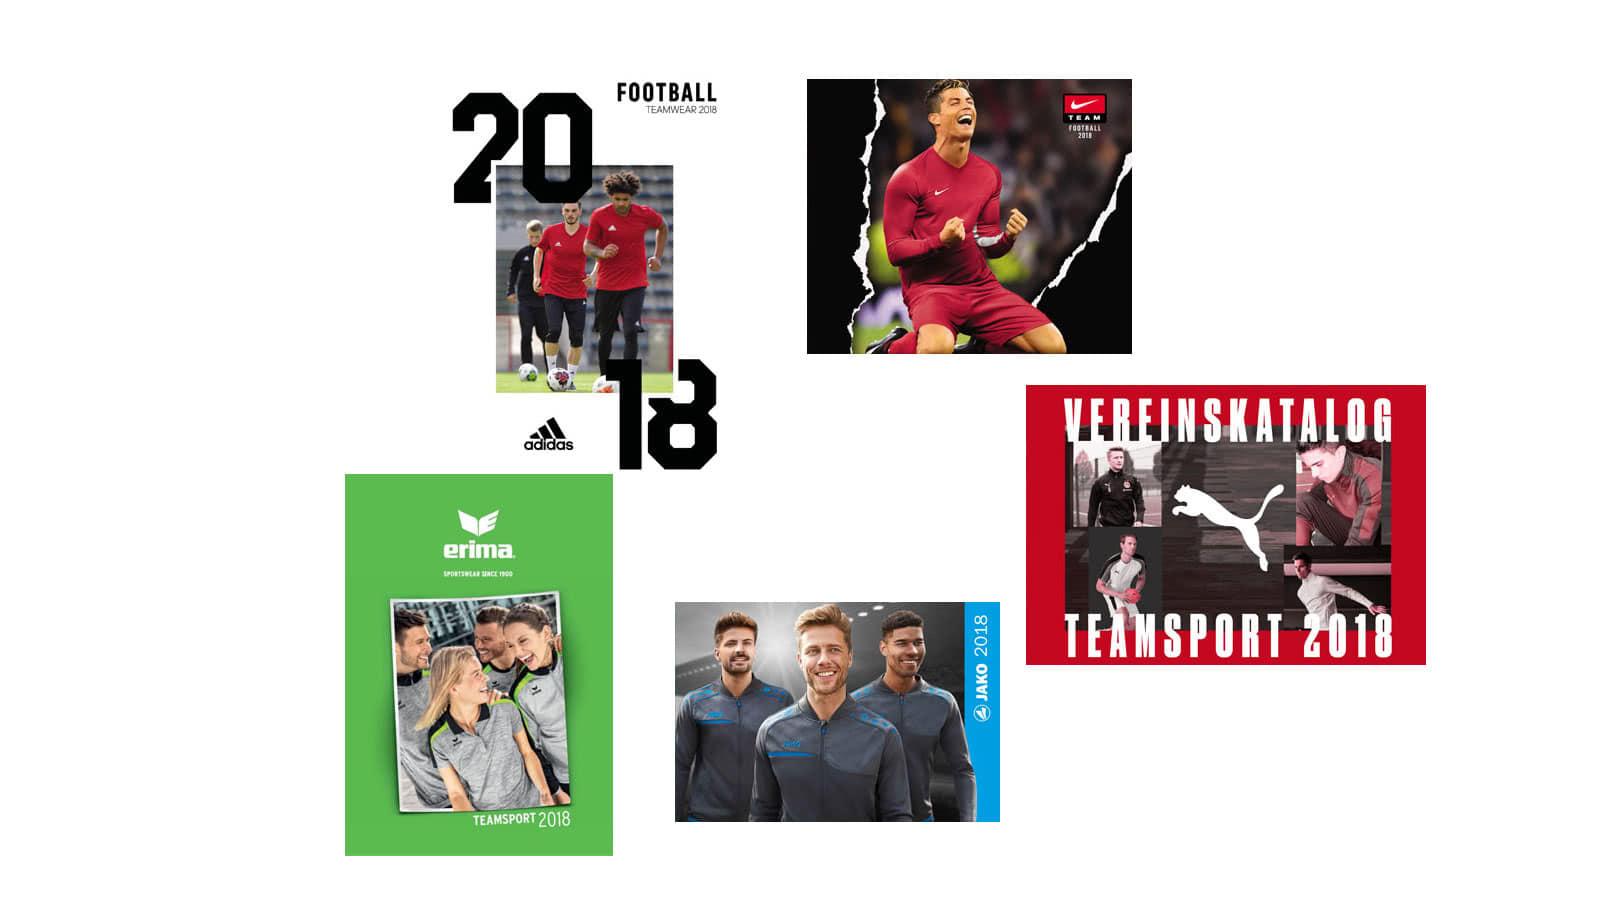 Die Fußball Katalog 2018/2019 als download